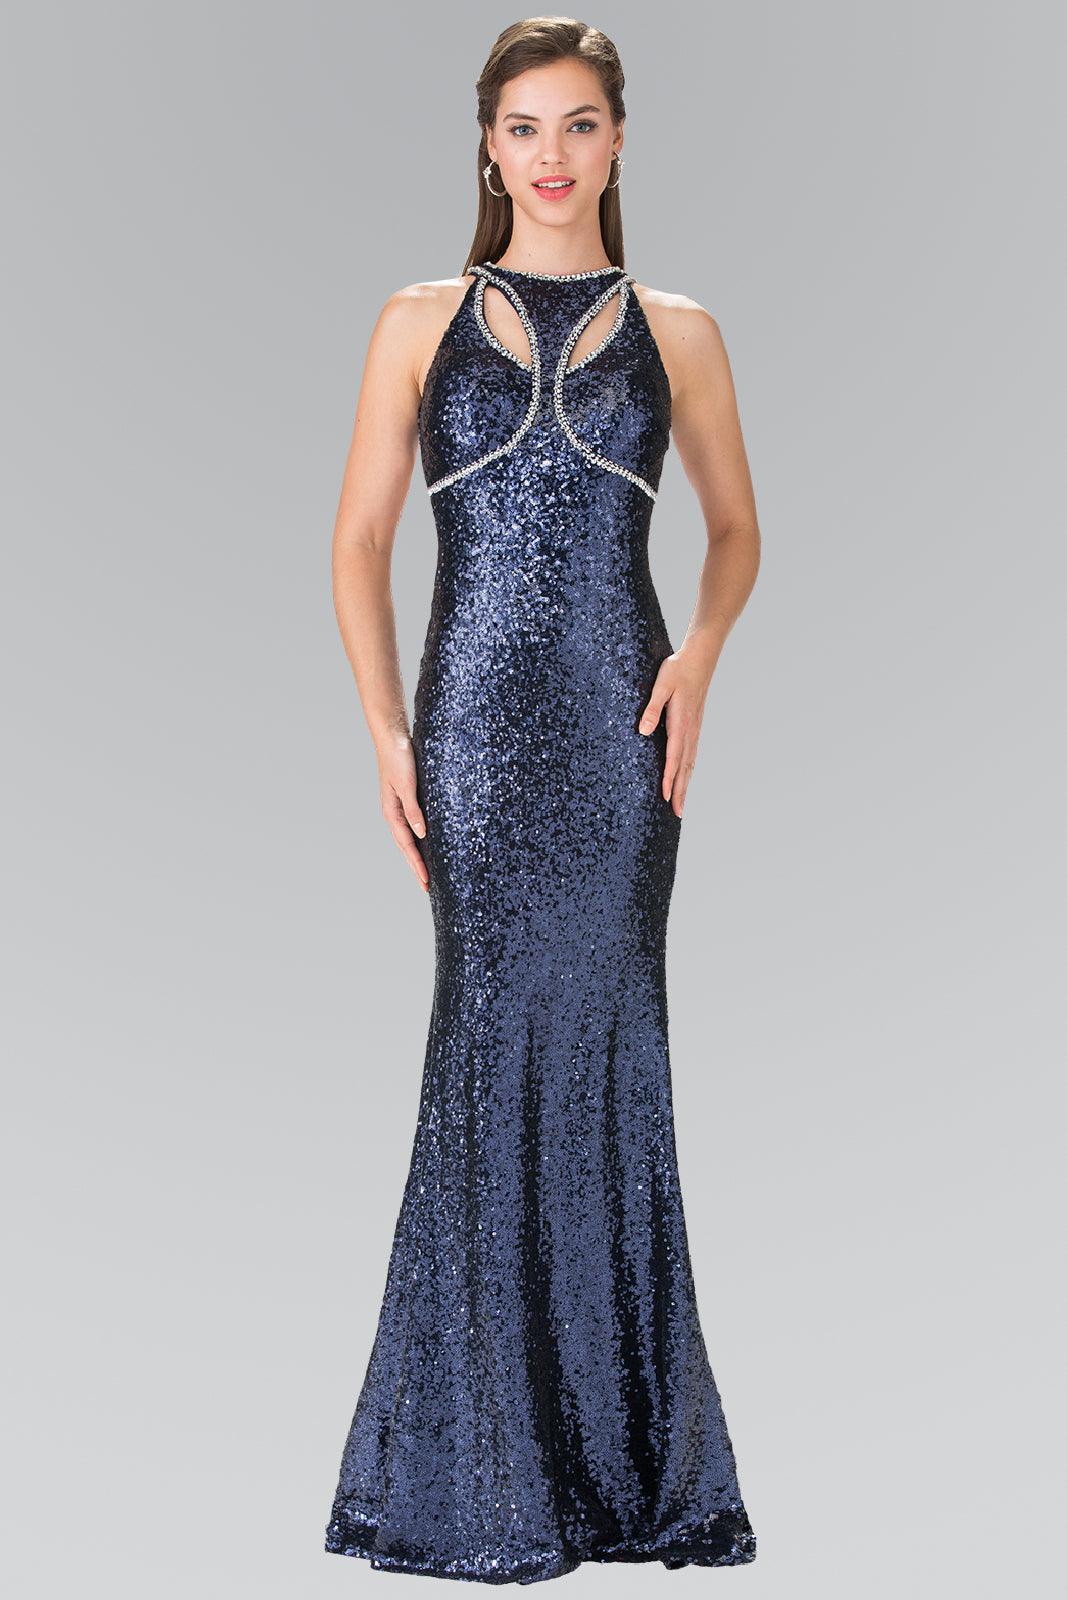 Prom Long Formal Halter Neck Beaded Evening Dress - The Dress Outlet Elizabeth K